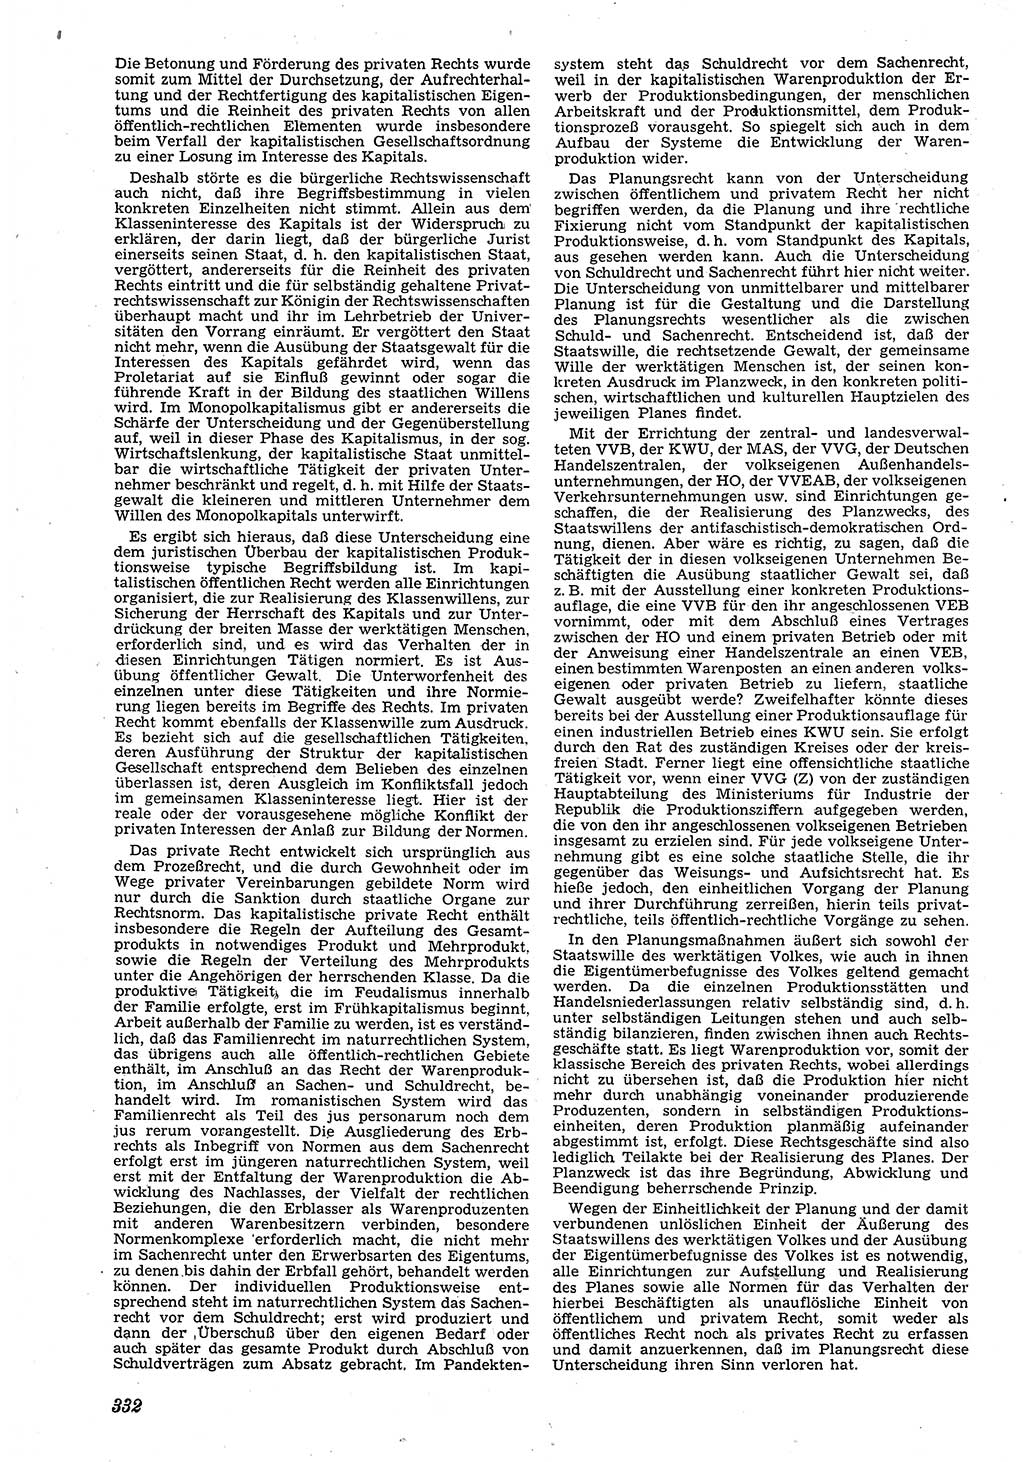 Neue Justiz (NJ), Zeitschrift für Recht und Rechtswissenschaft [Deutsche Demokratische Republik (DDR)], 4. Jahrgang 1950, Seite 332 (NJ DDR 1950, S. 332)